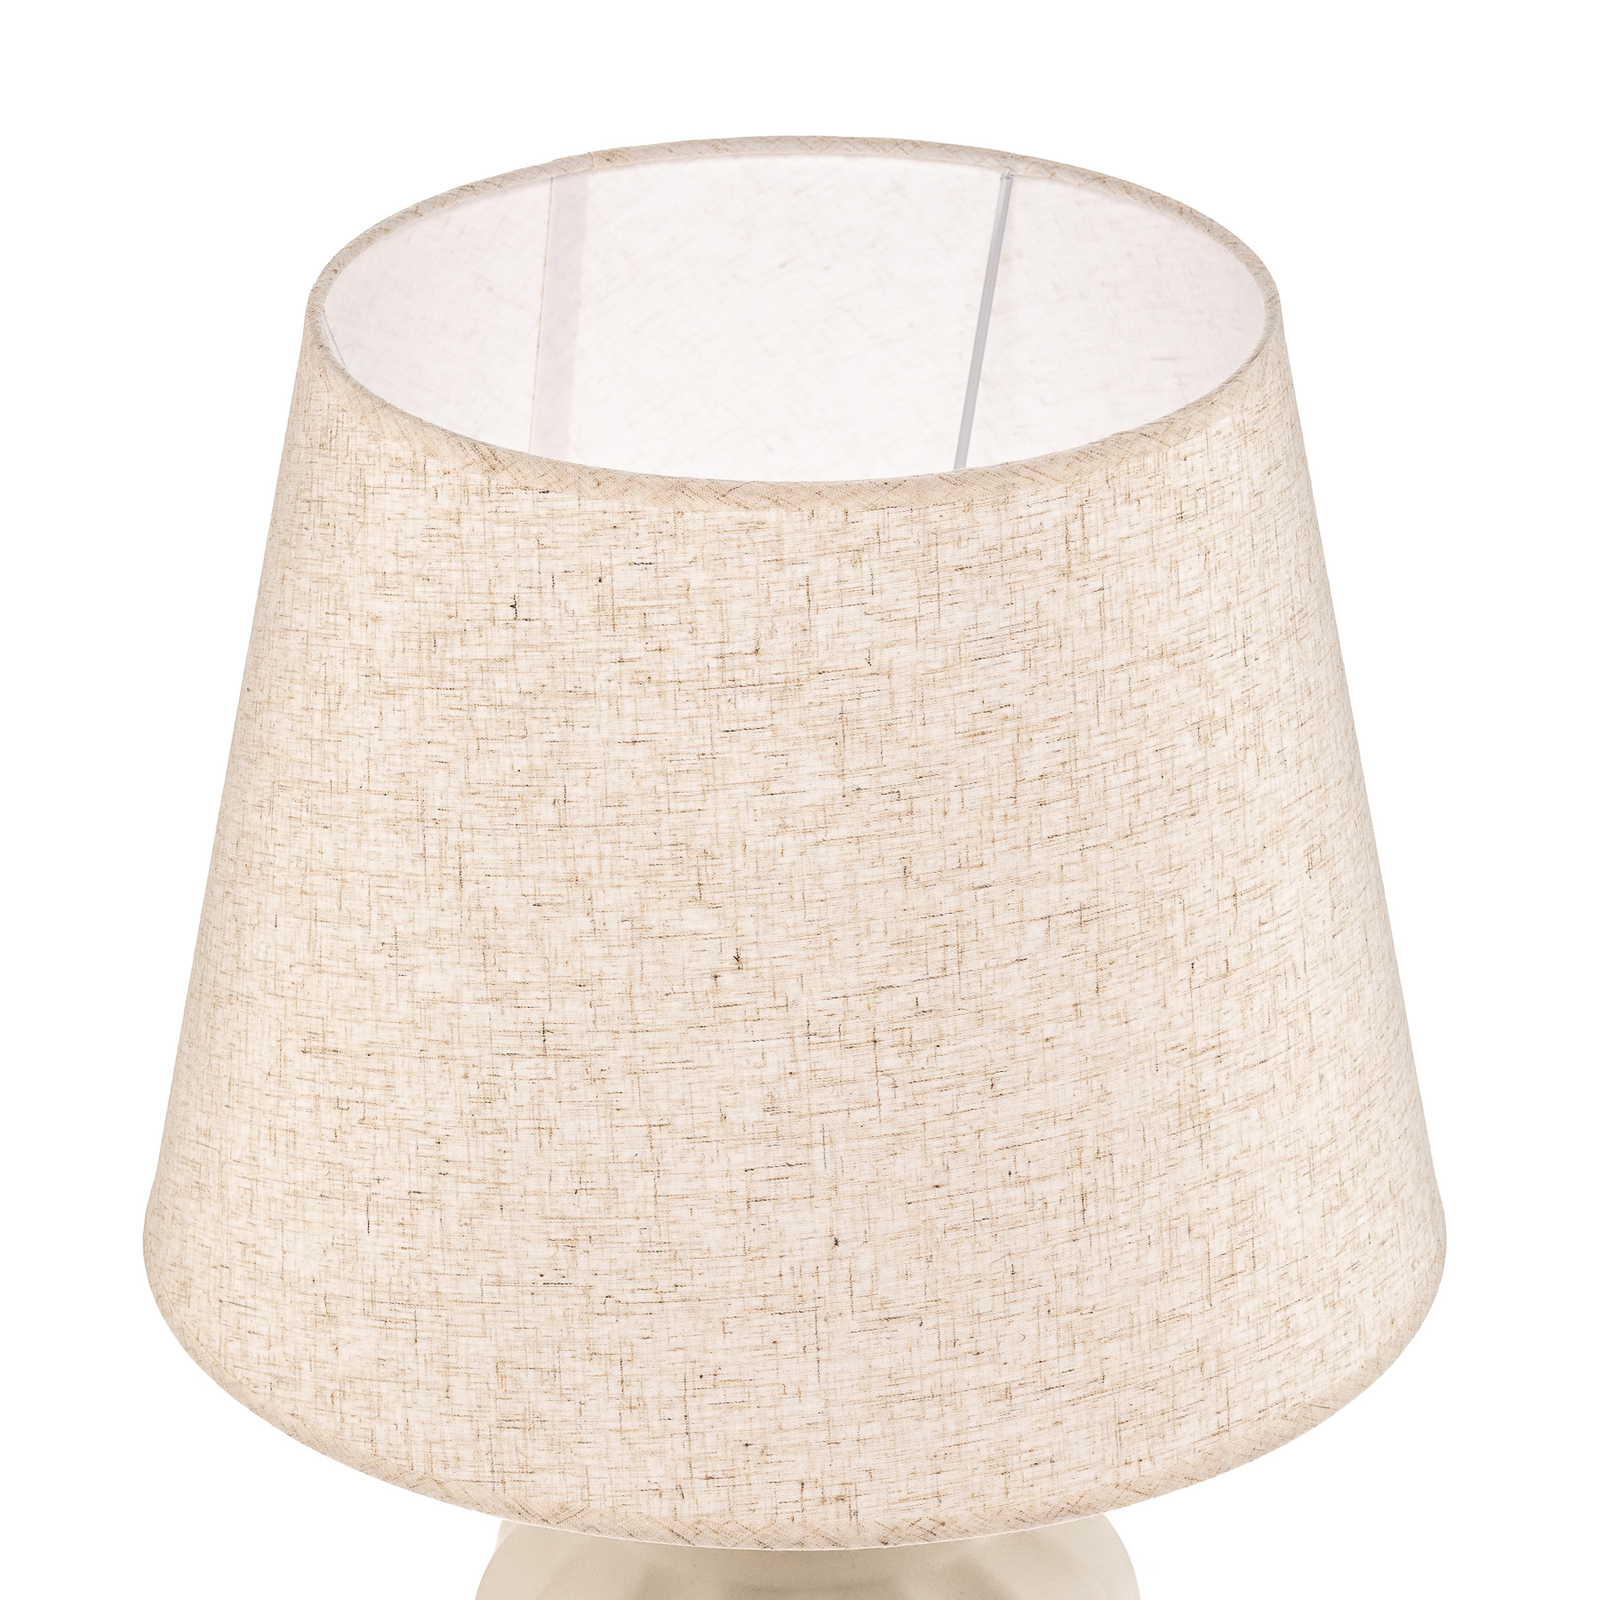 Lampa stołowa Vortice z ceramiki, biała